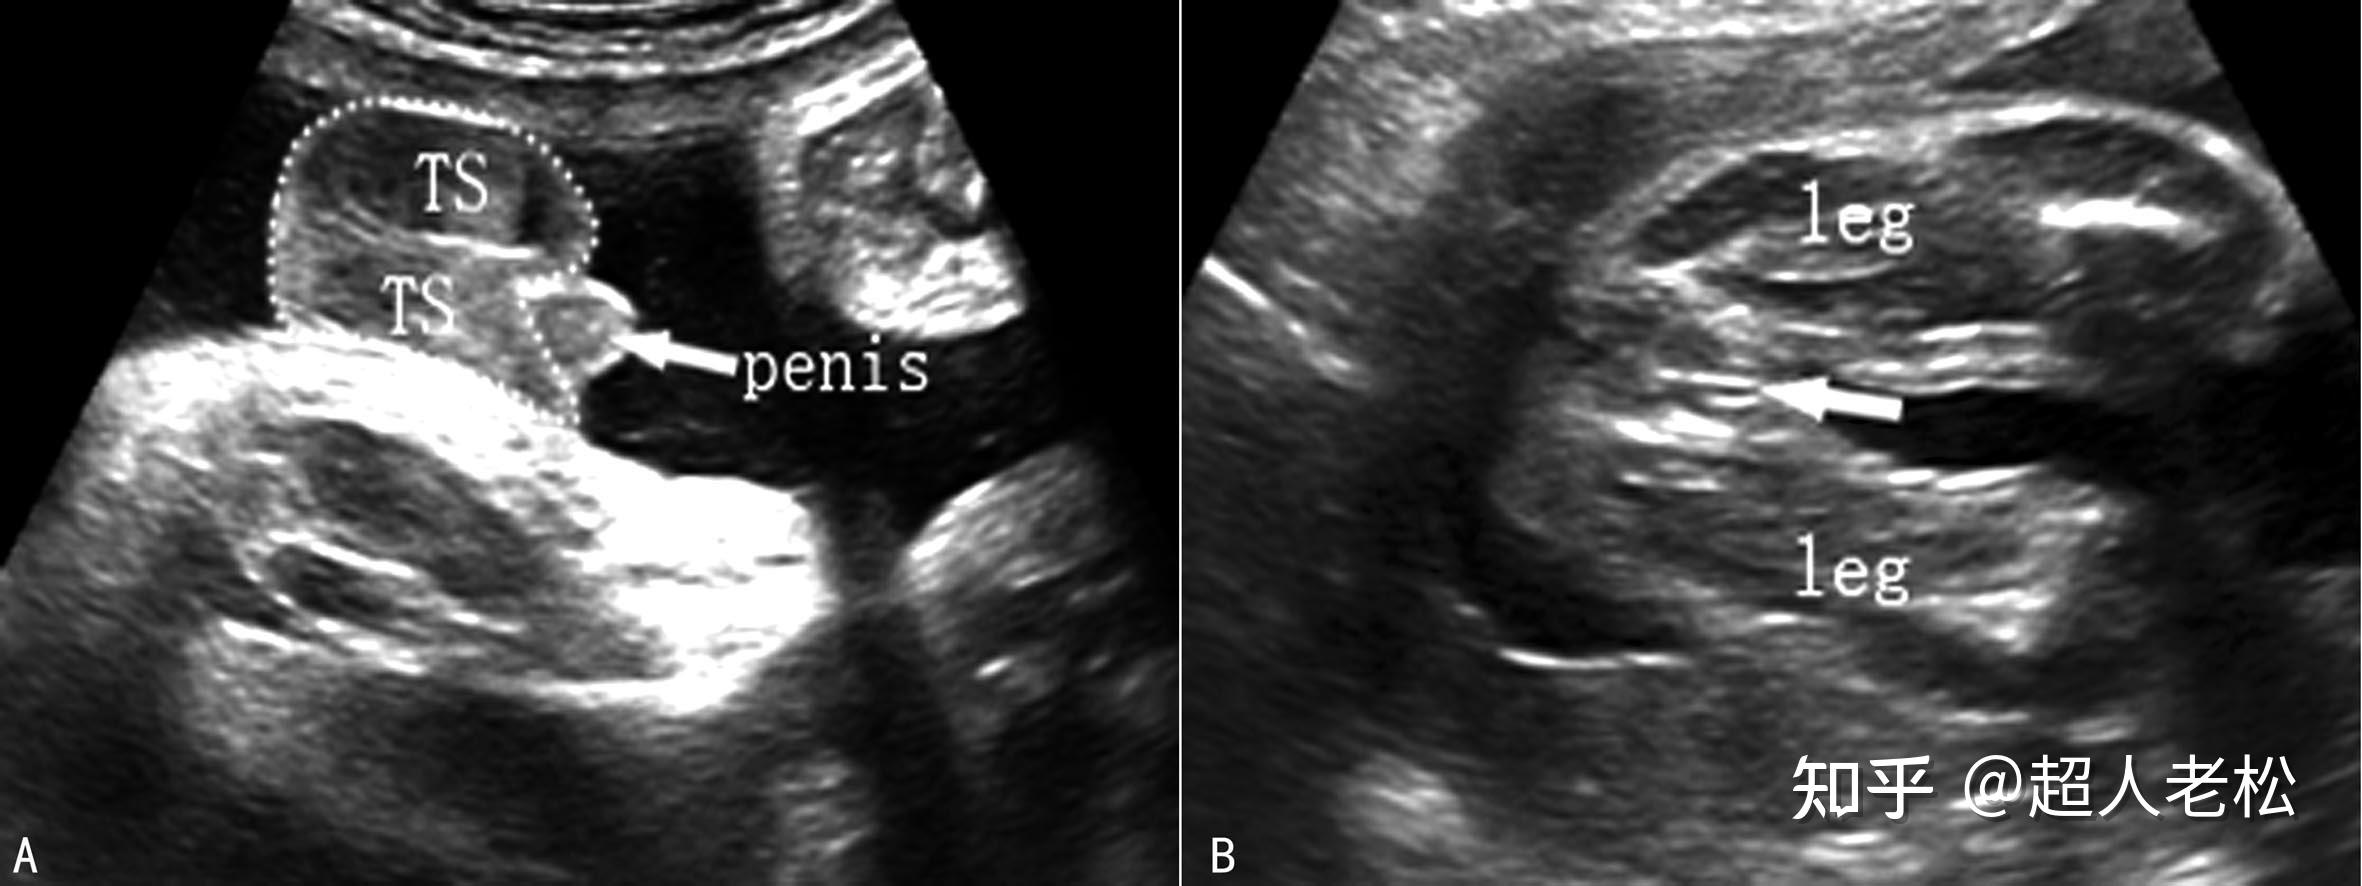 中晚期妊娠胎儿超声解剖特点 - 知乎